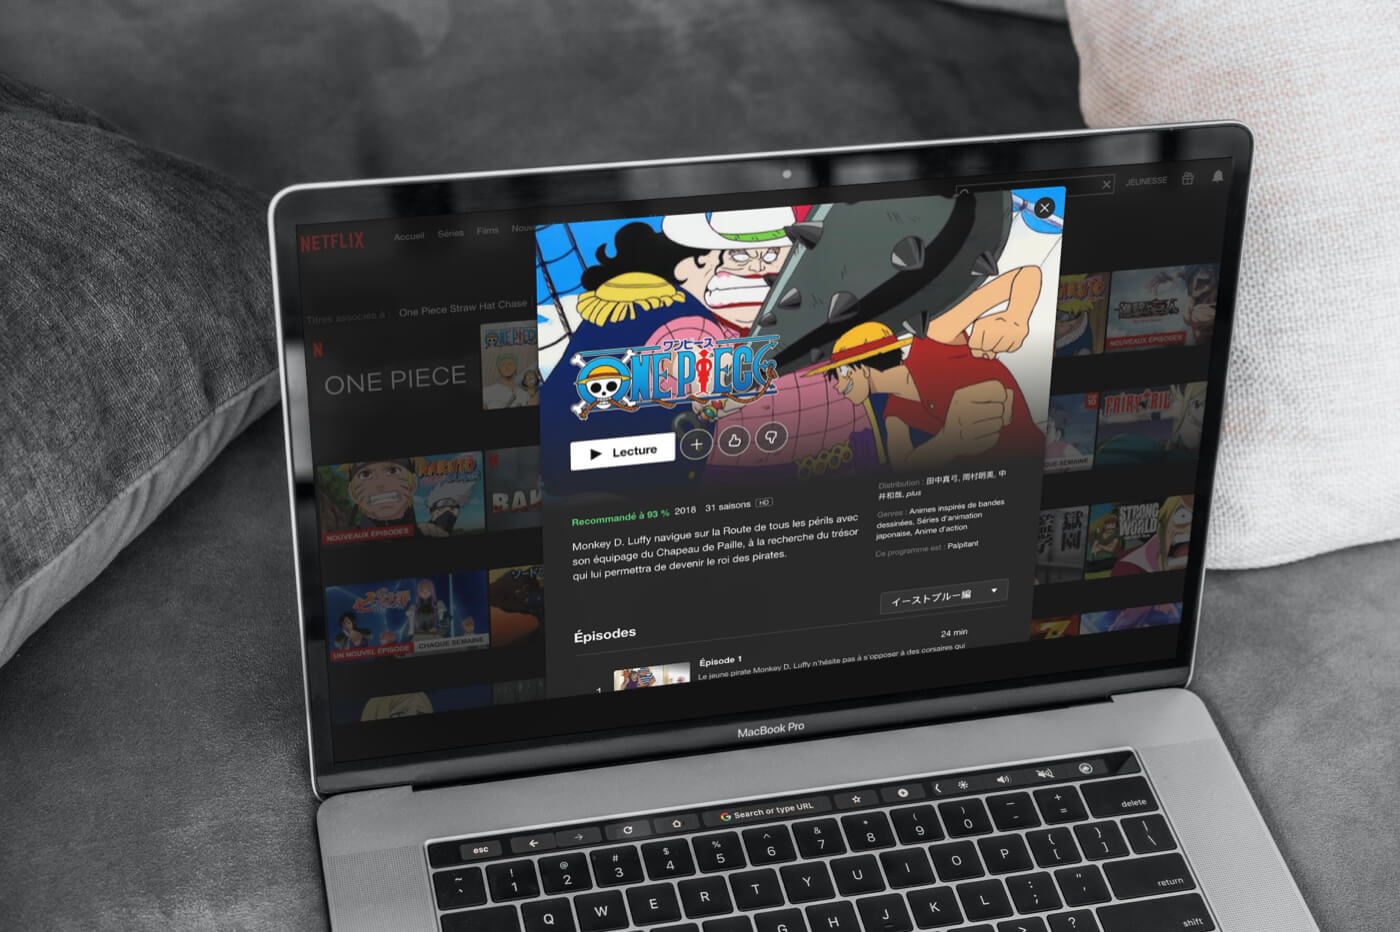 One Piece sur Netflix : à quand la sortie en France